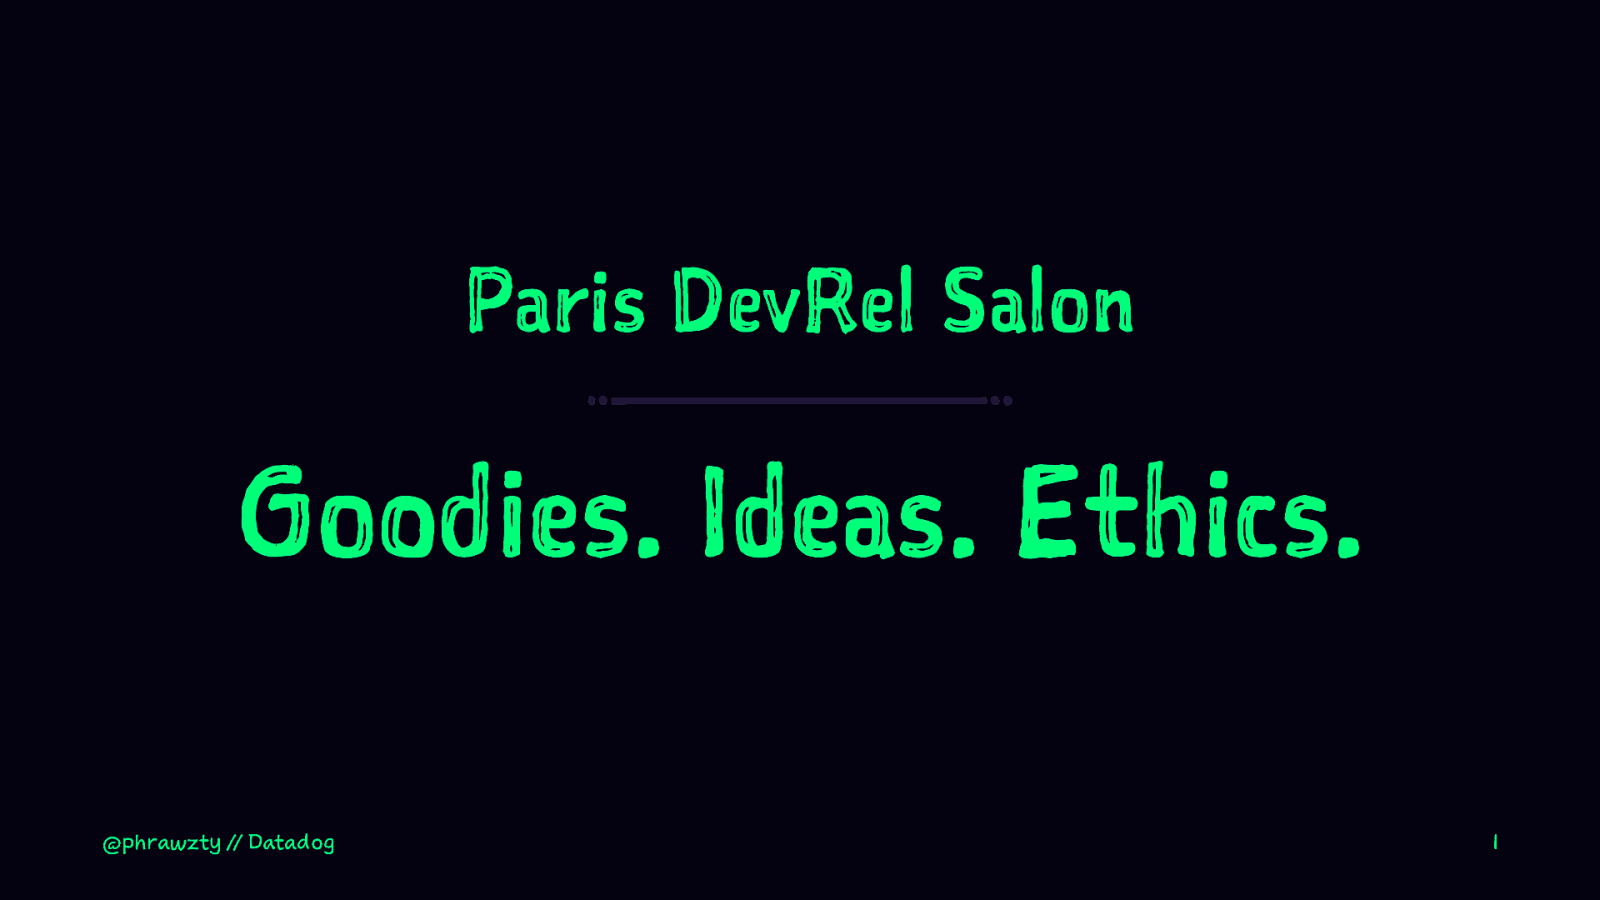 Goodies. Ideas. Ethics.